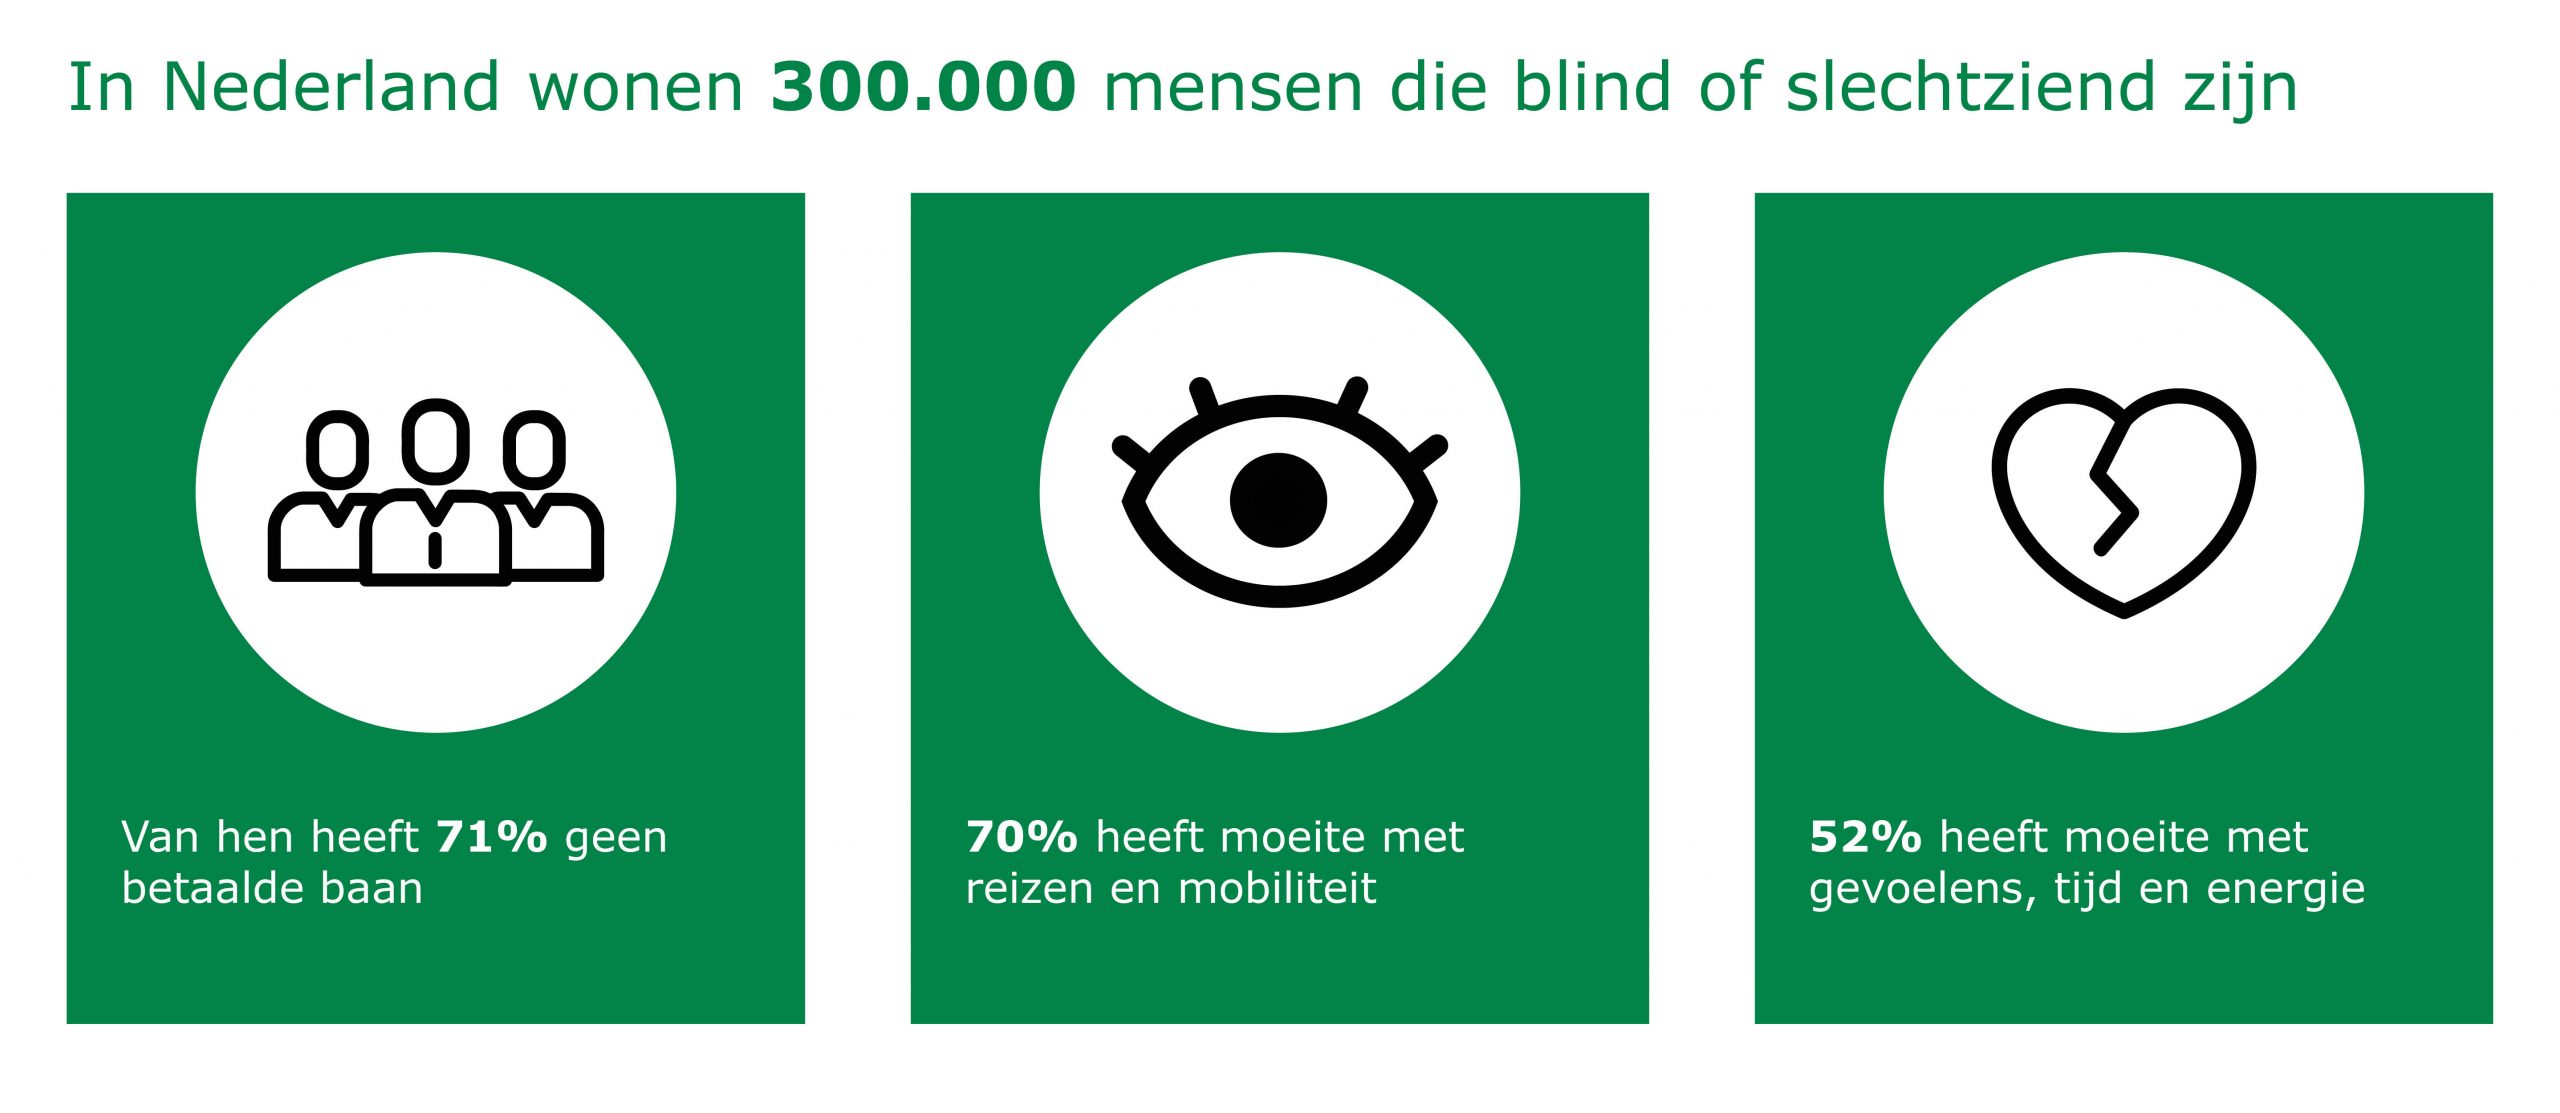 Banner met boven aan, in het groen, de tekst: 'In Nederland wonen 300.000 mensen die blind of slechtziend zijn'. Onder de tekst staan drie groene blokken. In het linker blok staat in een witte bol de illustratie van 3 mensen in pak. Onder de illustratie staat de tekst: 'Van hen heeft 71% geen betaalde baan'. In het middelste blok staat in een witte bol een illustratie van een oog. Onder de illustratie staat de tekst: '70% heeft moeite met reizen en mobiliteit'. In het rechter blok staat ook een witte bol met daarin de illustratie van een gebroken hart. Onder de illustratie staat de tekst: 'heeft 52% moeite met gevoelens, tijd en energie'.